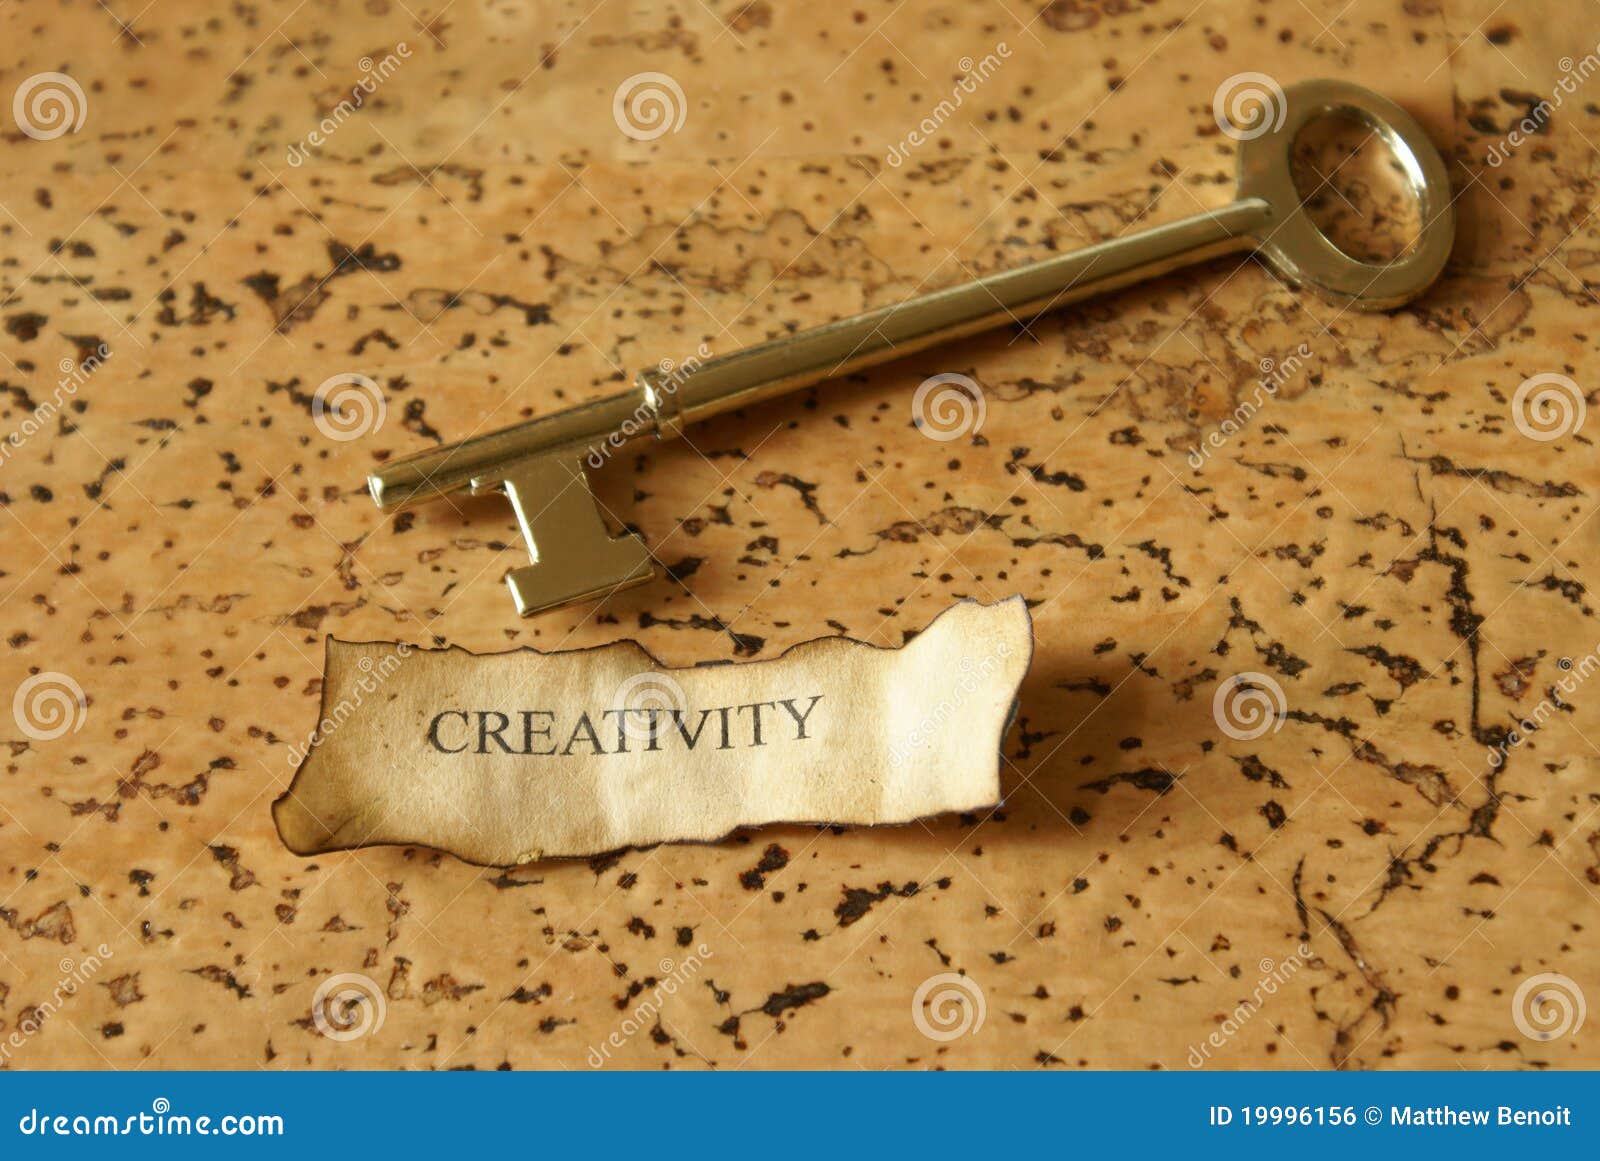 key of creativity